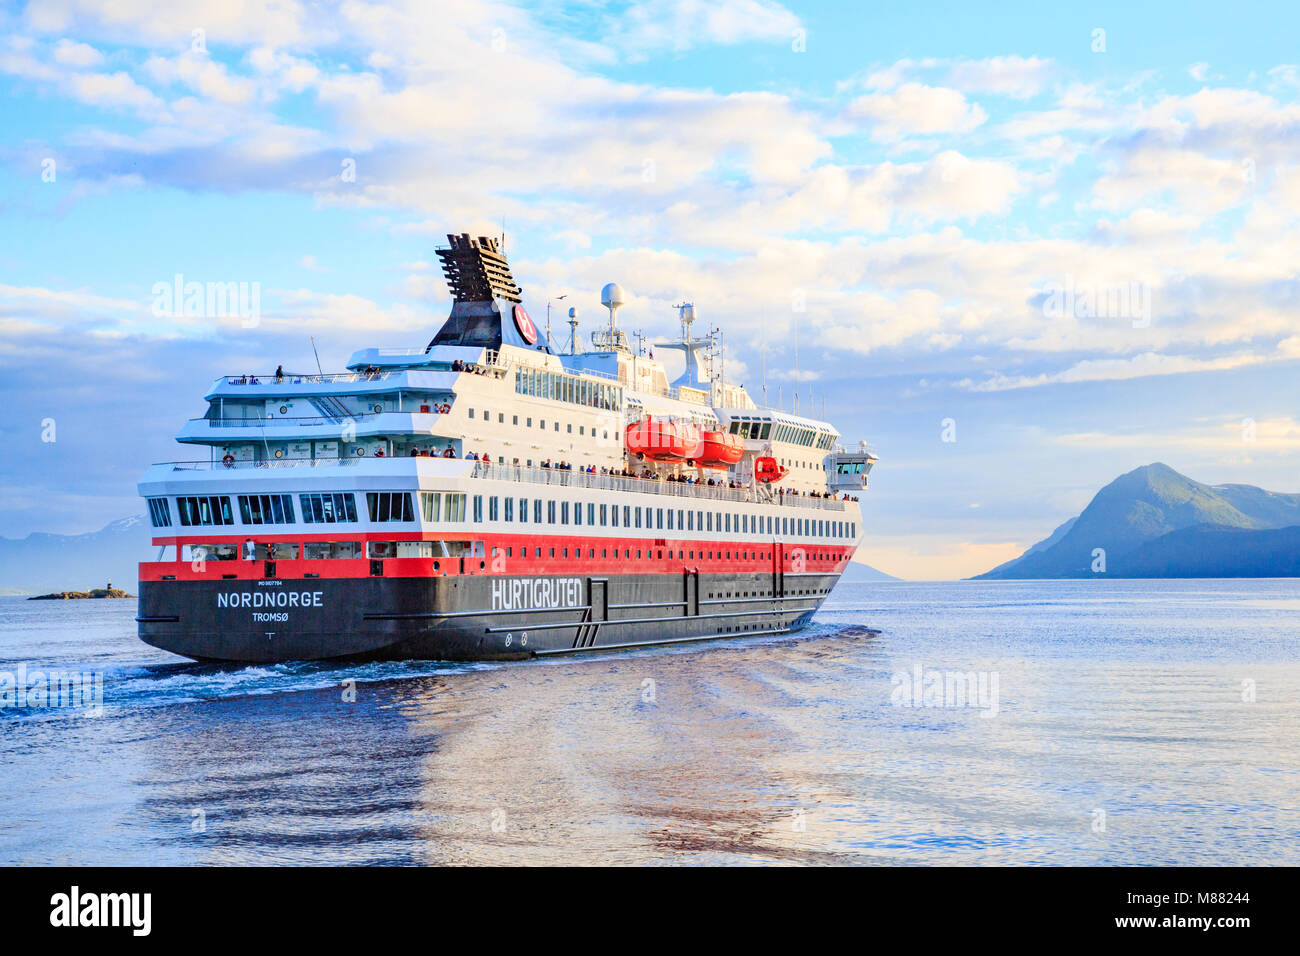 Close up de croisière Hurtigruten ferry naviguant sur le fjord de Molde, Norvège Banque D'Images